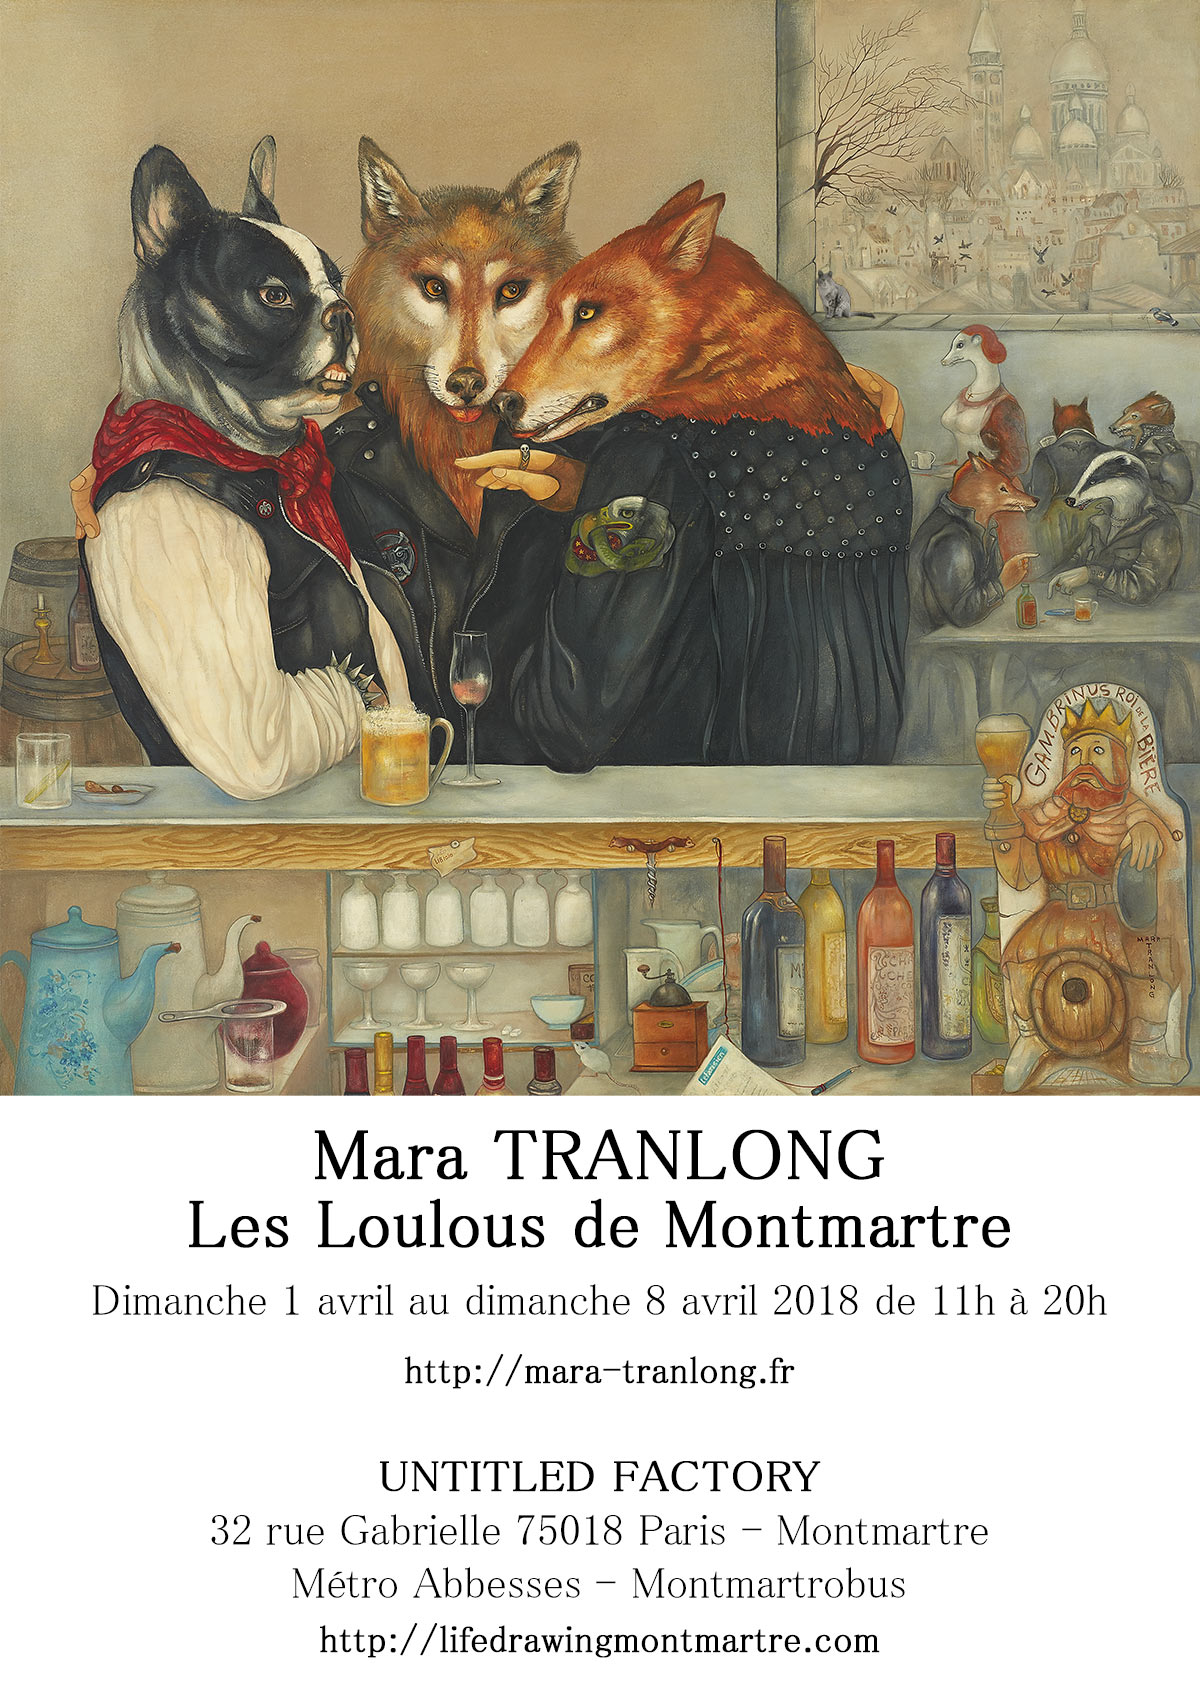 Mara Tranlong - Collection 2005-2010 - Les loulous de Montmartre - Titre : Le képi blanc - Peinture acrylique sur bois - 90cm x 100 cm